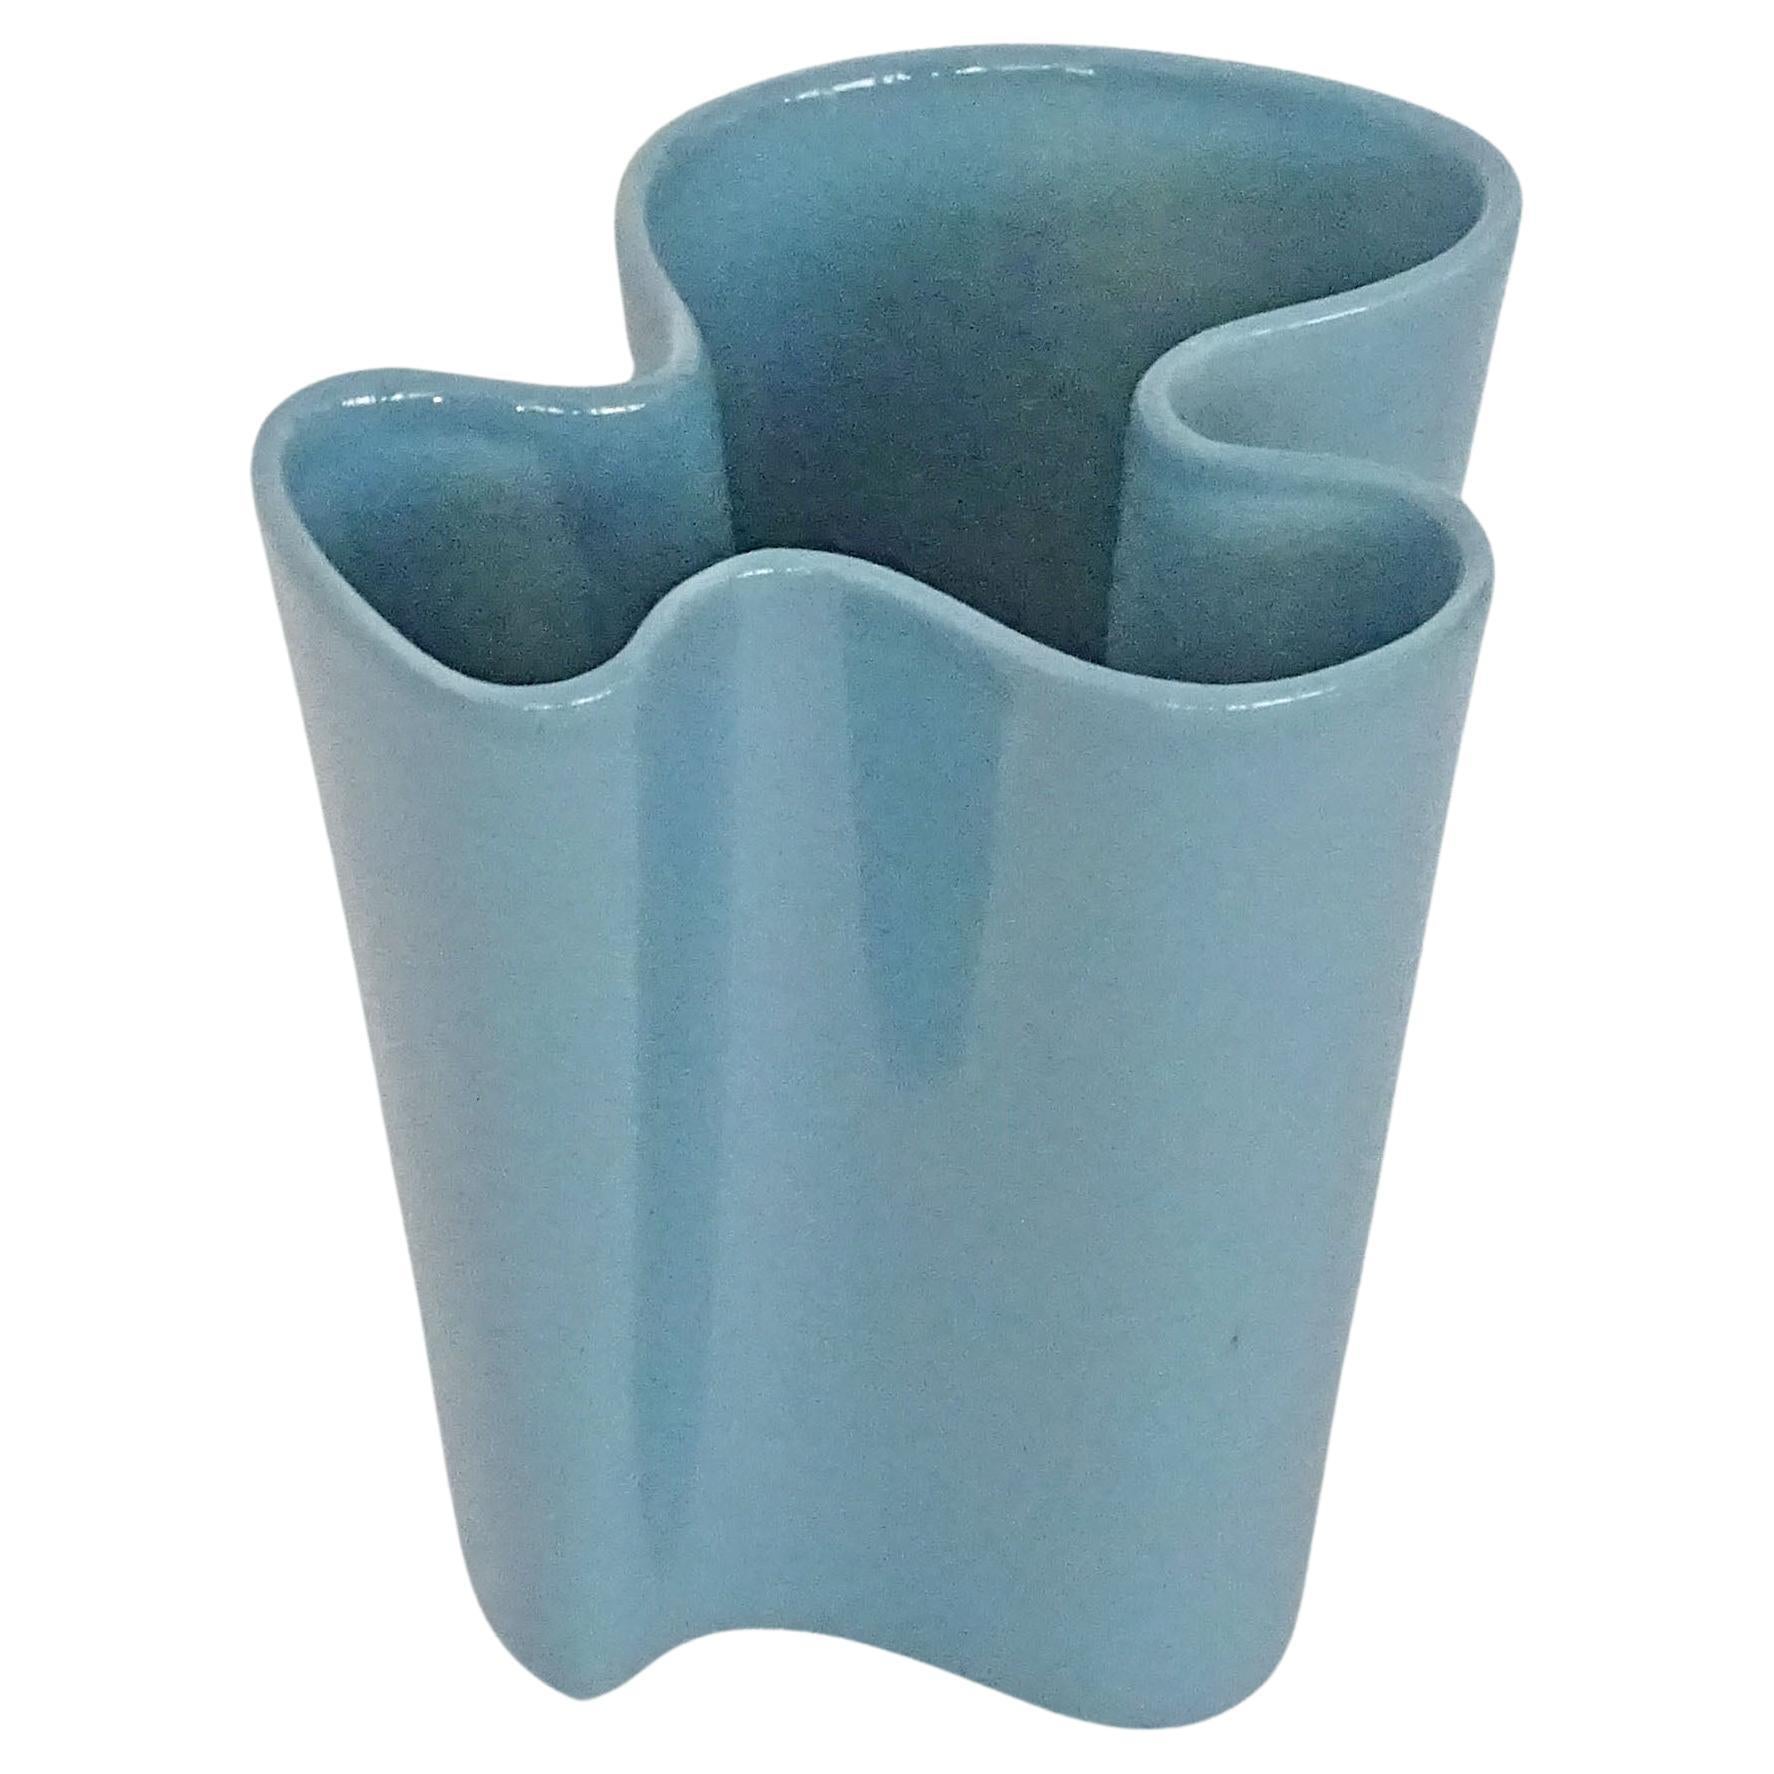 Italian 1950s Biomorphic petrol blue Ceramic vase